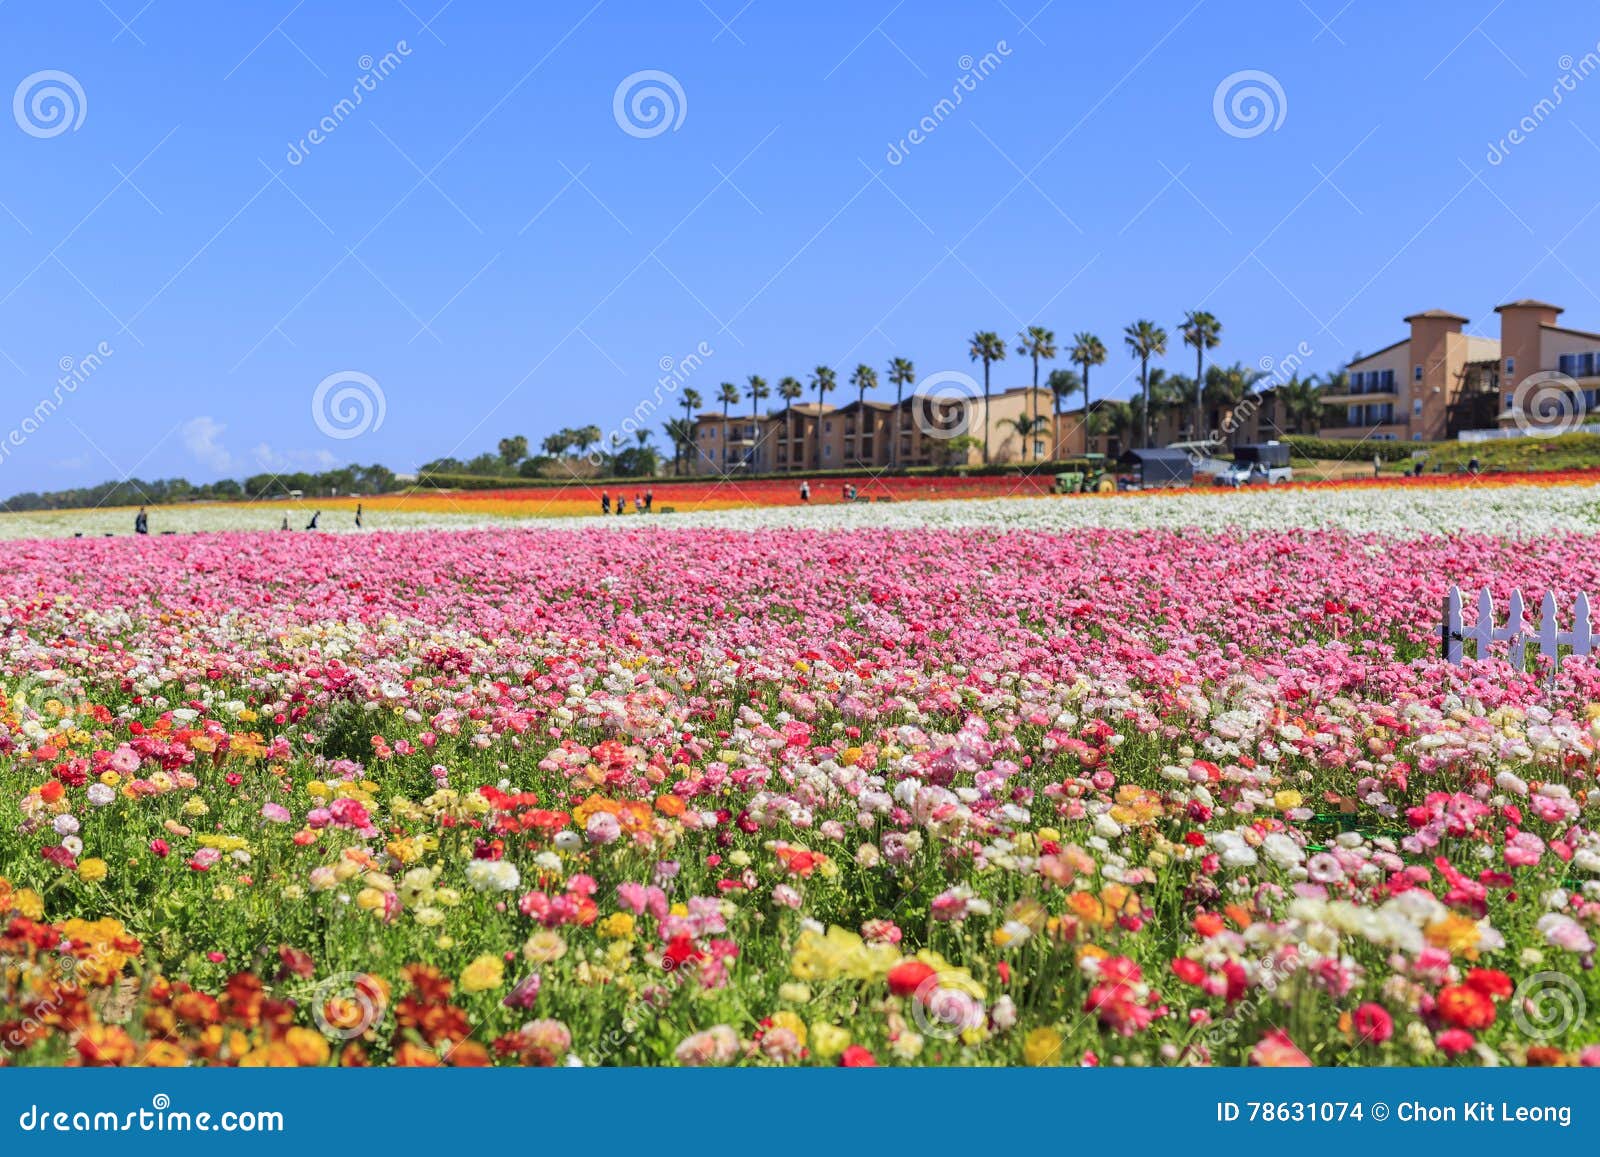 the flower fields